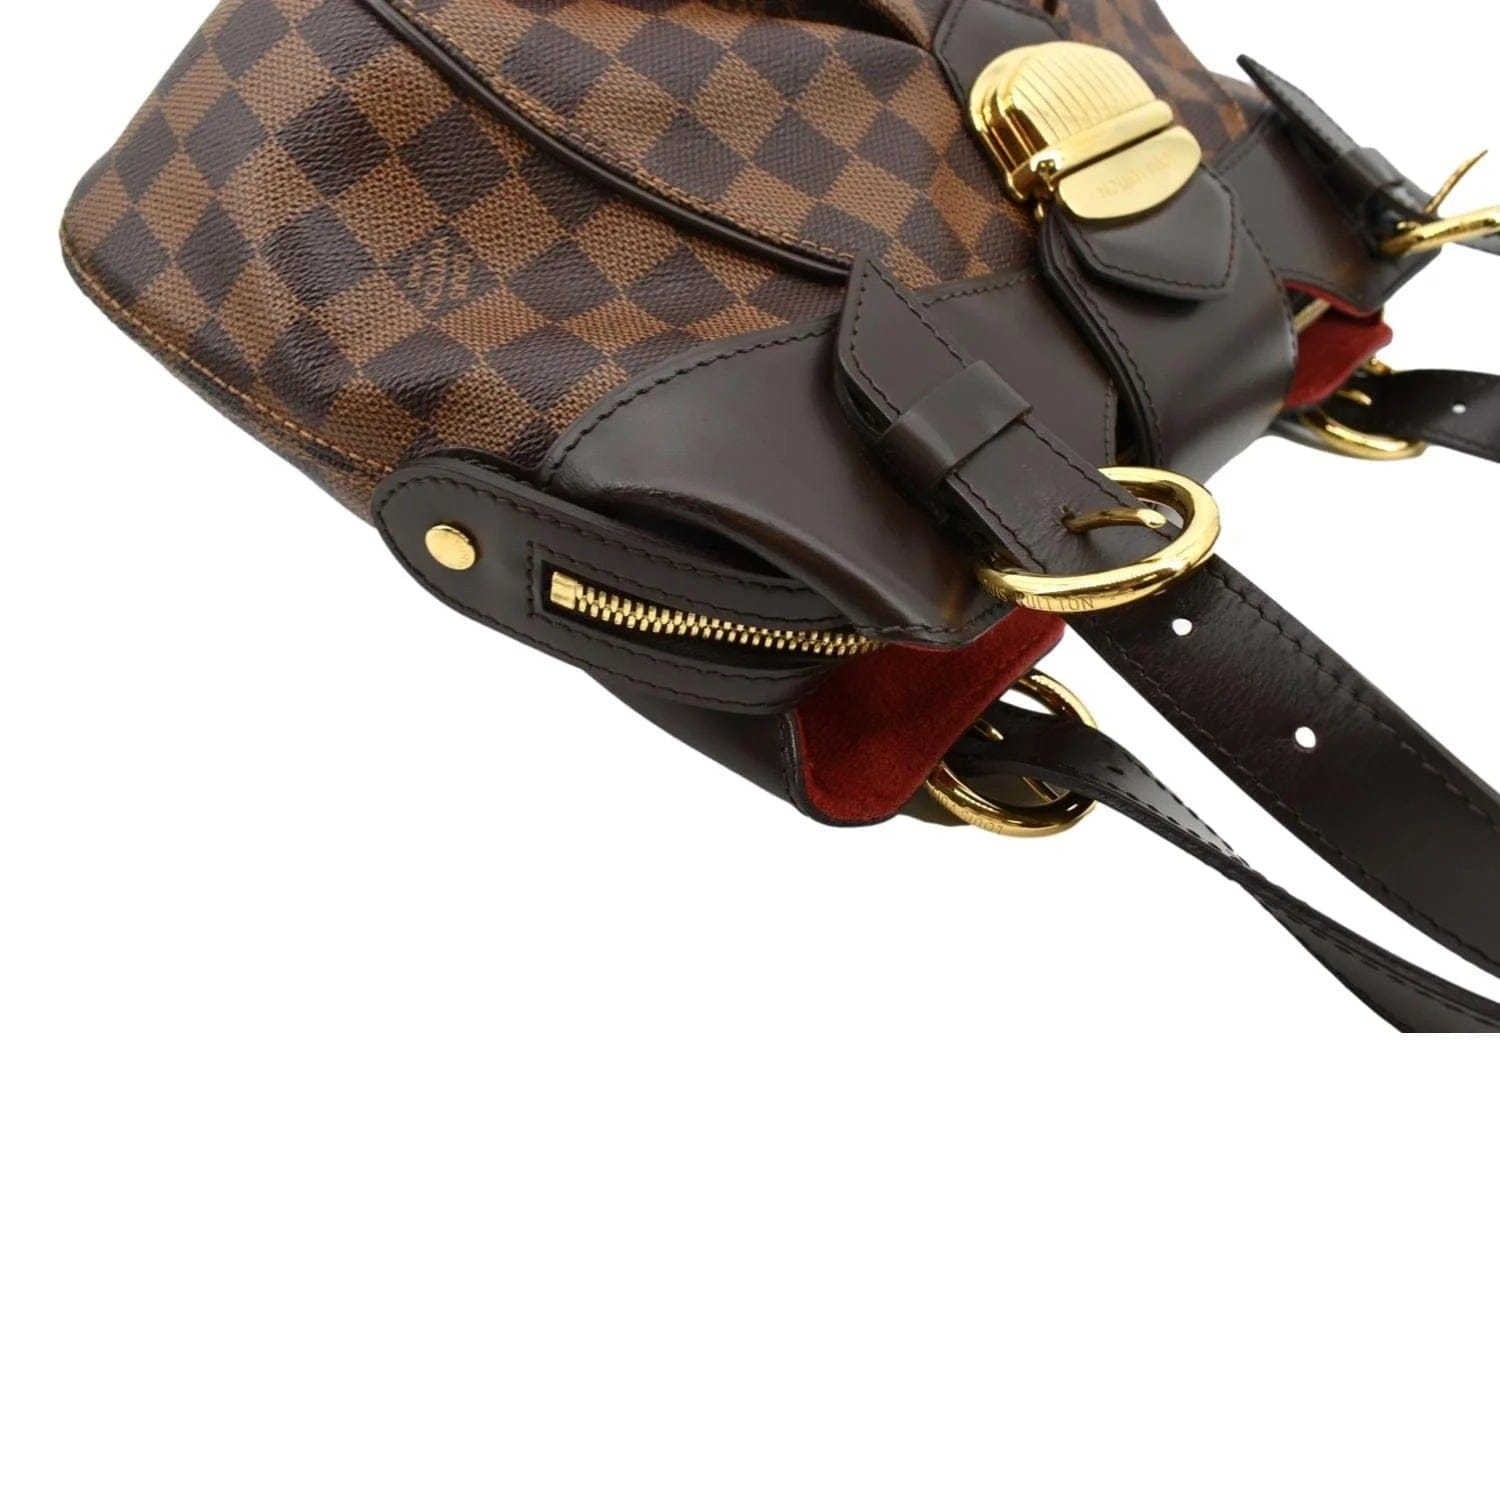 Louis Vuitton, Bags, Auc Louis Vuitton Damier Ebene Sistina Long Wallet  Ca369